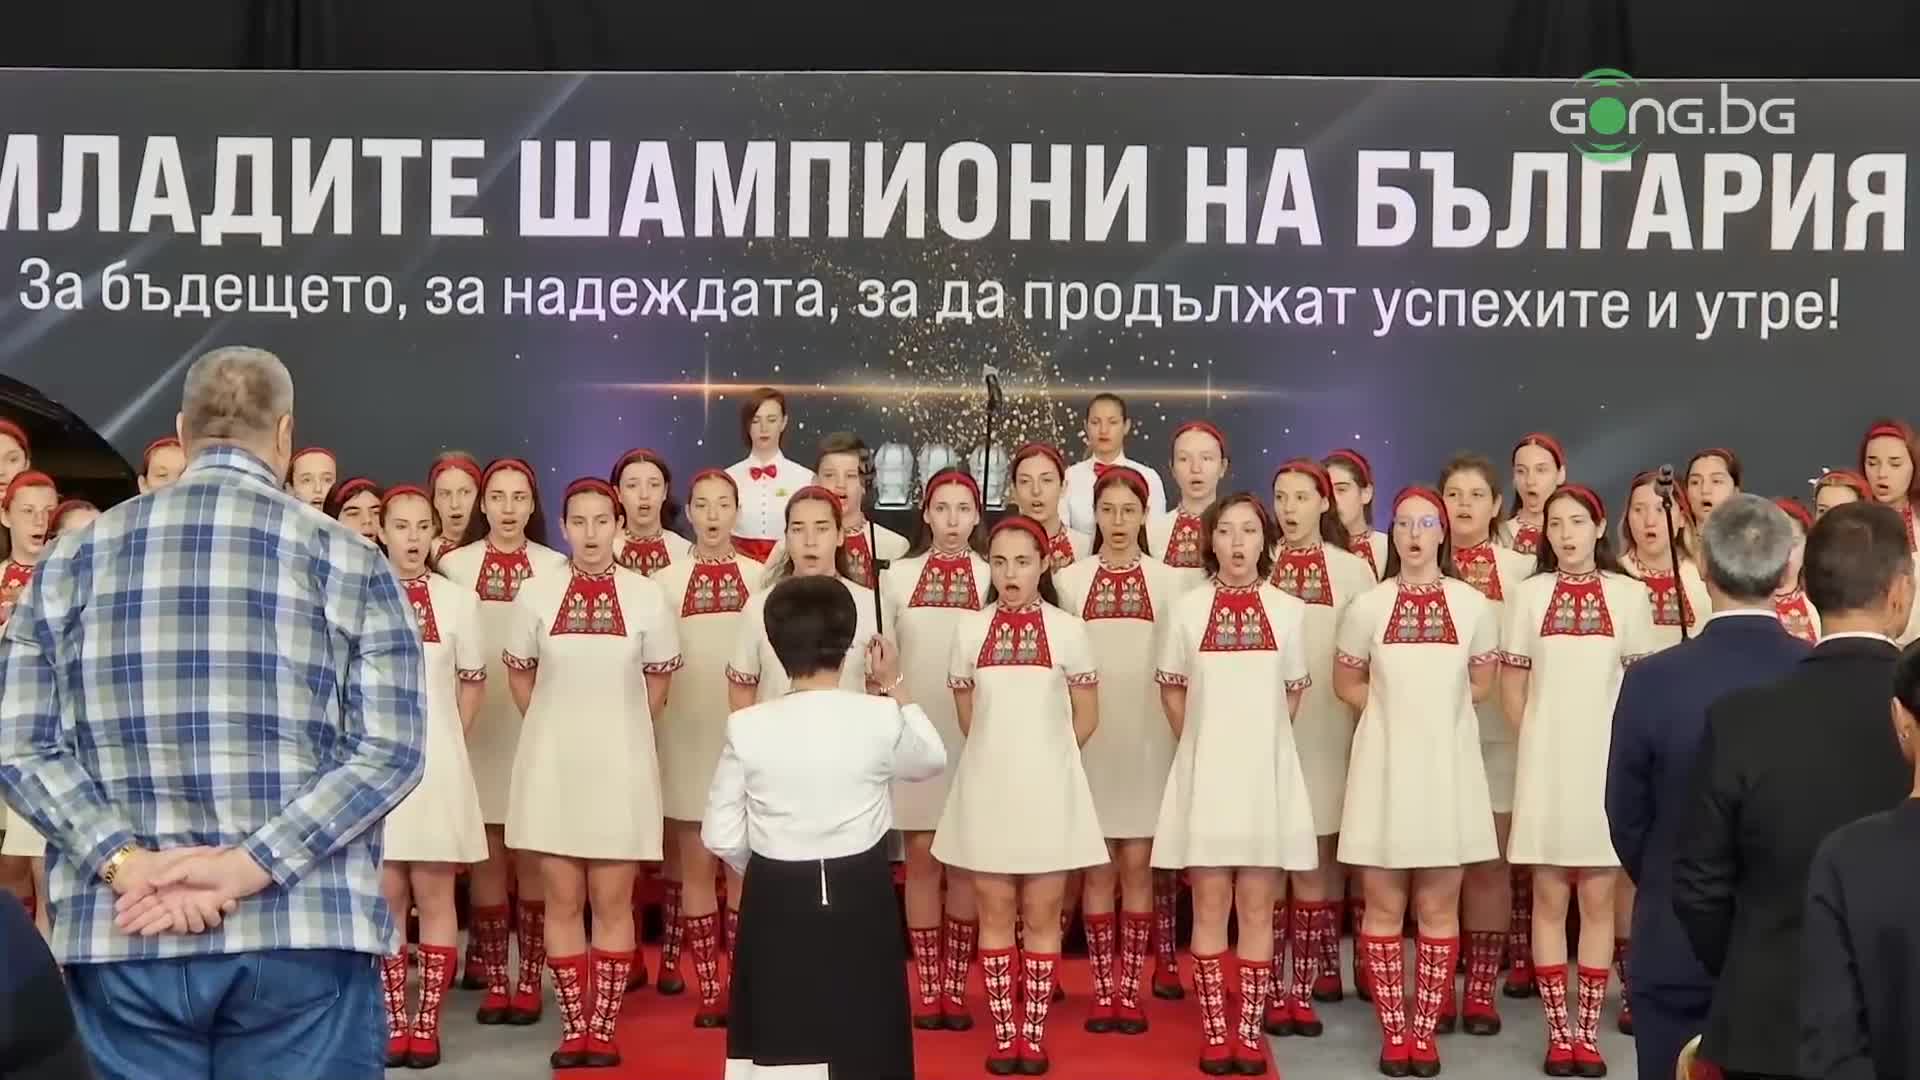 Красиво изпълнение на химна на церемонията "Младите шампиони на България"